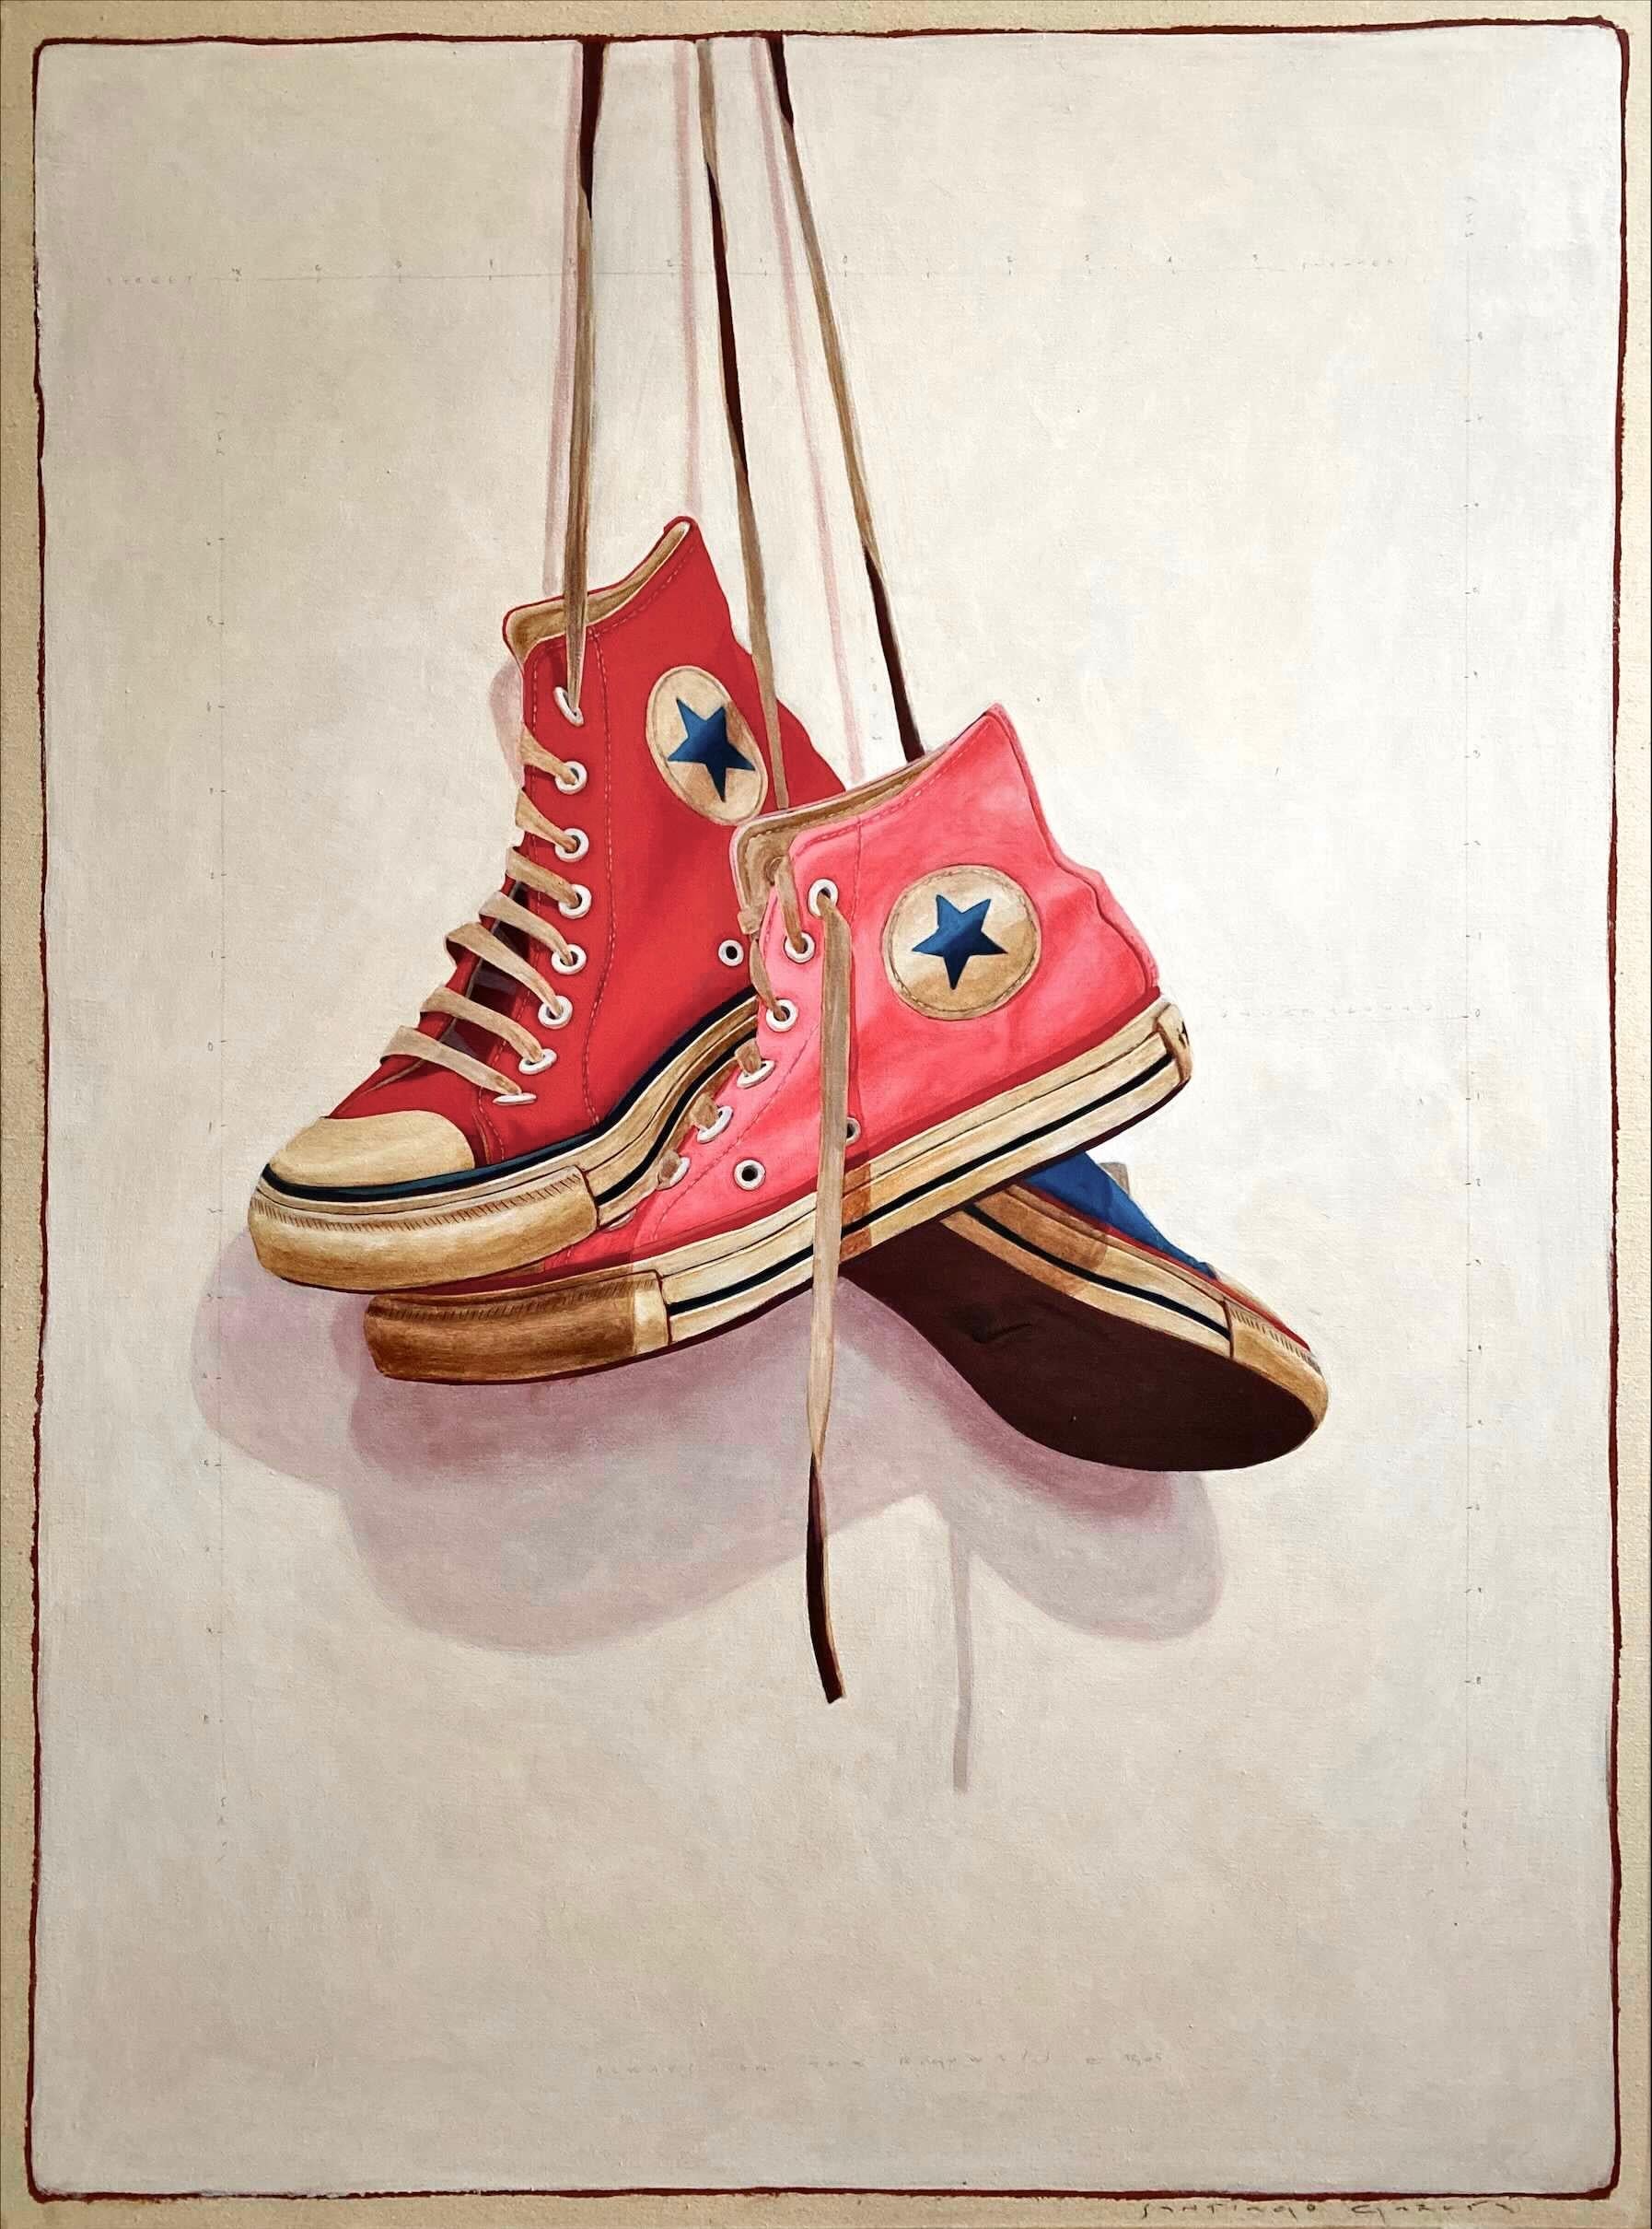 Still-Life Painting Santiago Garcia - « n° 1505 » peinture à l'huile photoréaliste de baskets converses rouges, roses et bleues